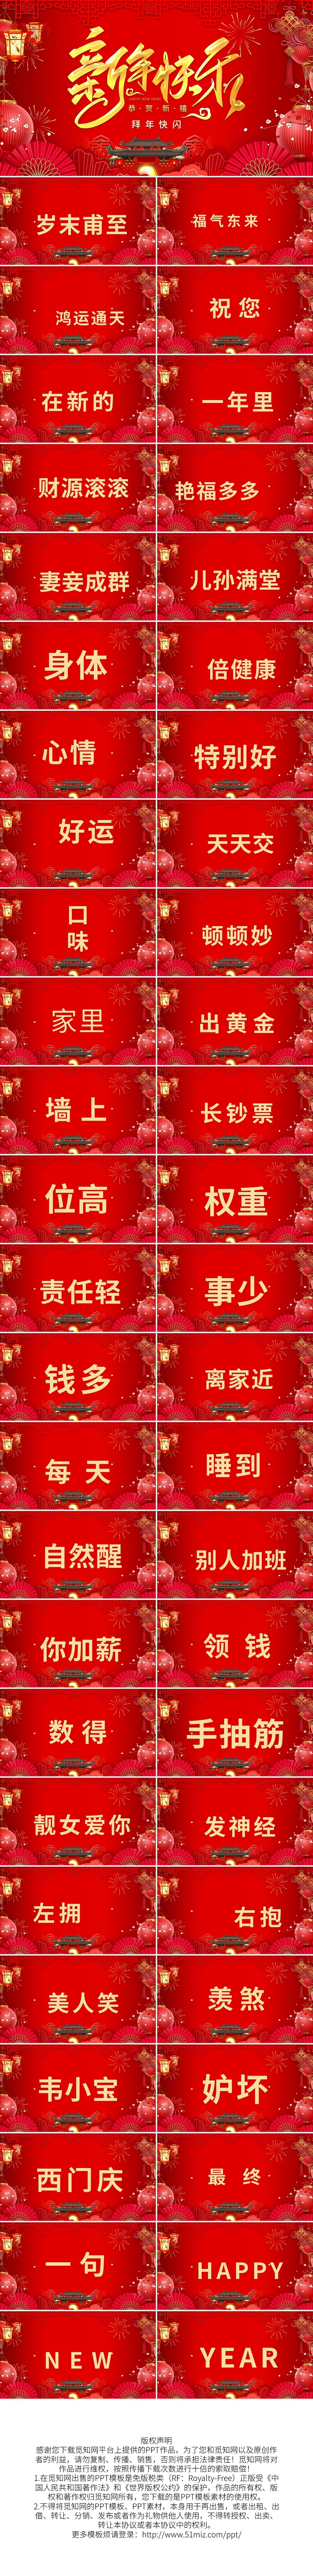 红色中国风创意快闪新年拜年祝福PPT模板宣传PPT动态PPT新年快闪